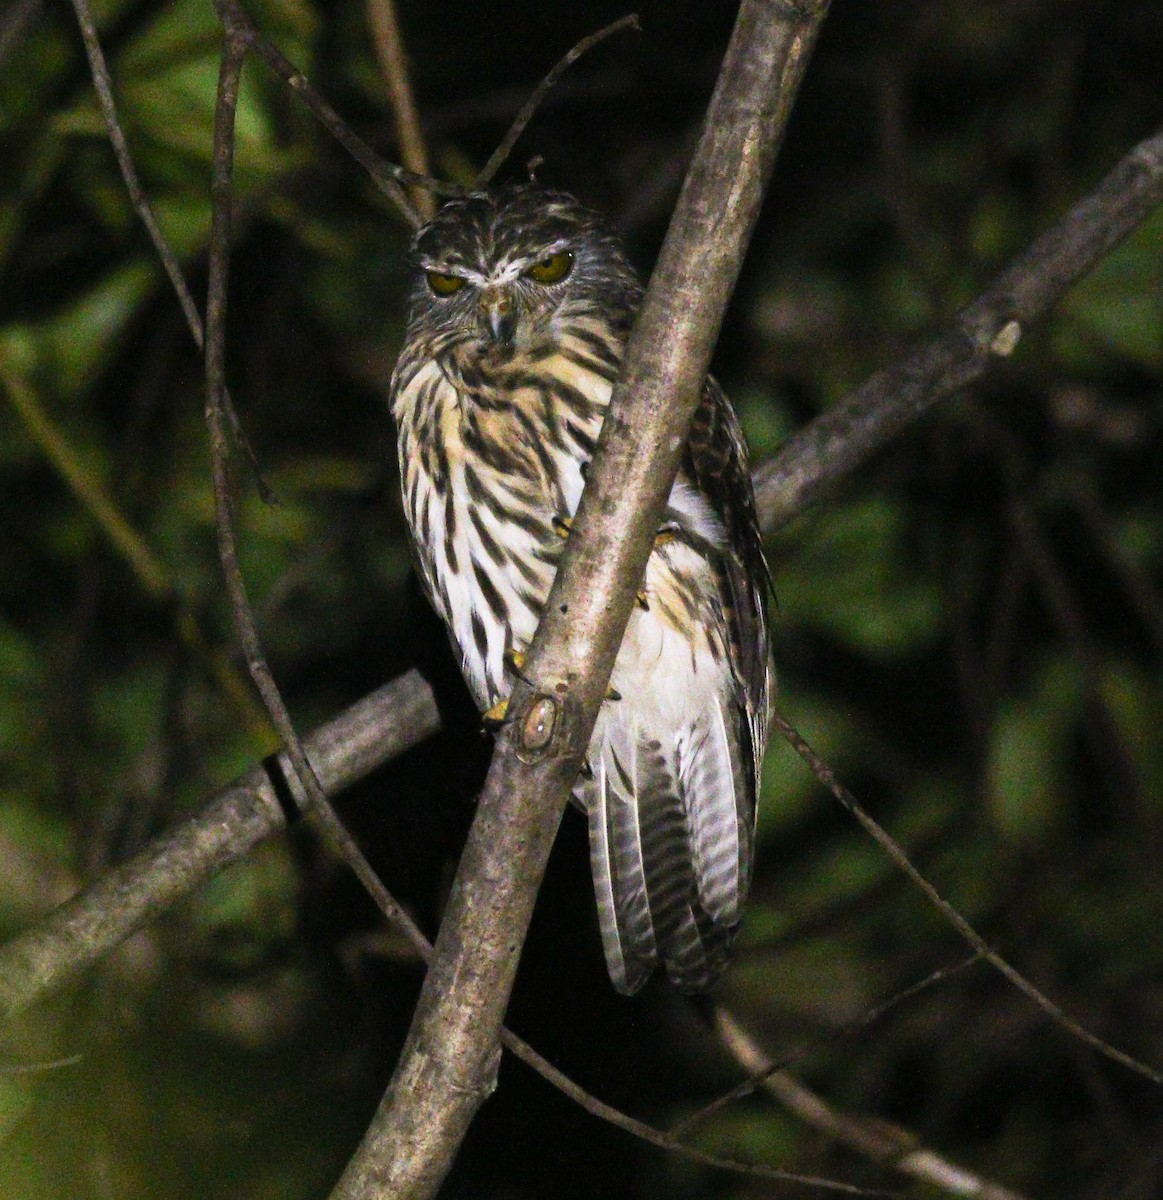 Papuan Owl - Wilbur Goh